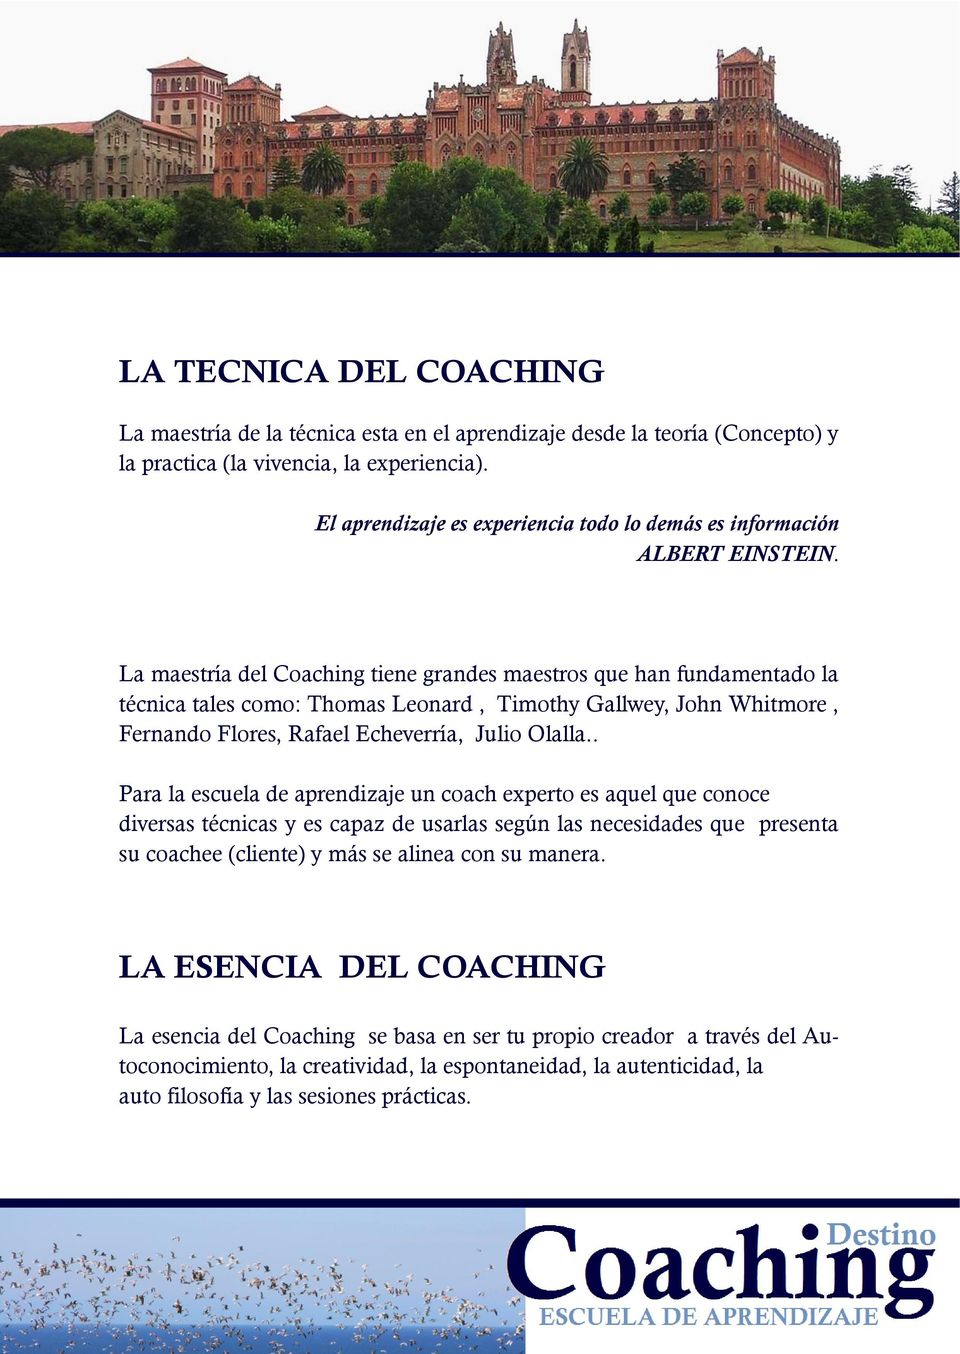 La maestría del Coaching tiene grandes maestros que han fundamentado la técnica tales como: Thomas Leonard, Timothy Gallwey, John Whitmore, Fernando Flores, Rafael Echeverría, Julio Olalla.